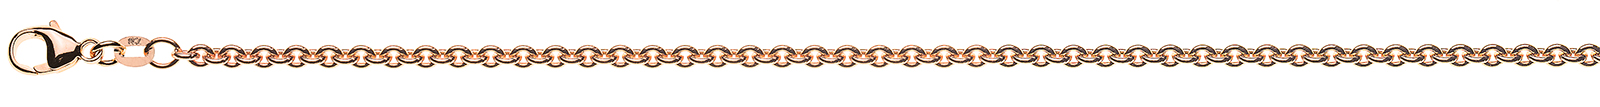 AURONOS Prestige Bracelet Round Anchor 18K Rose Gold 19cm 3mm